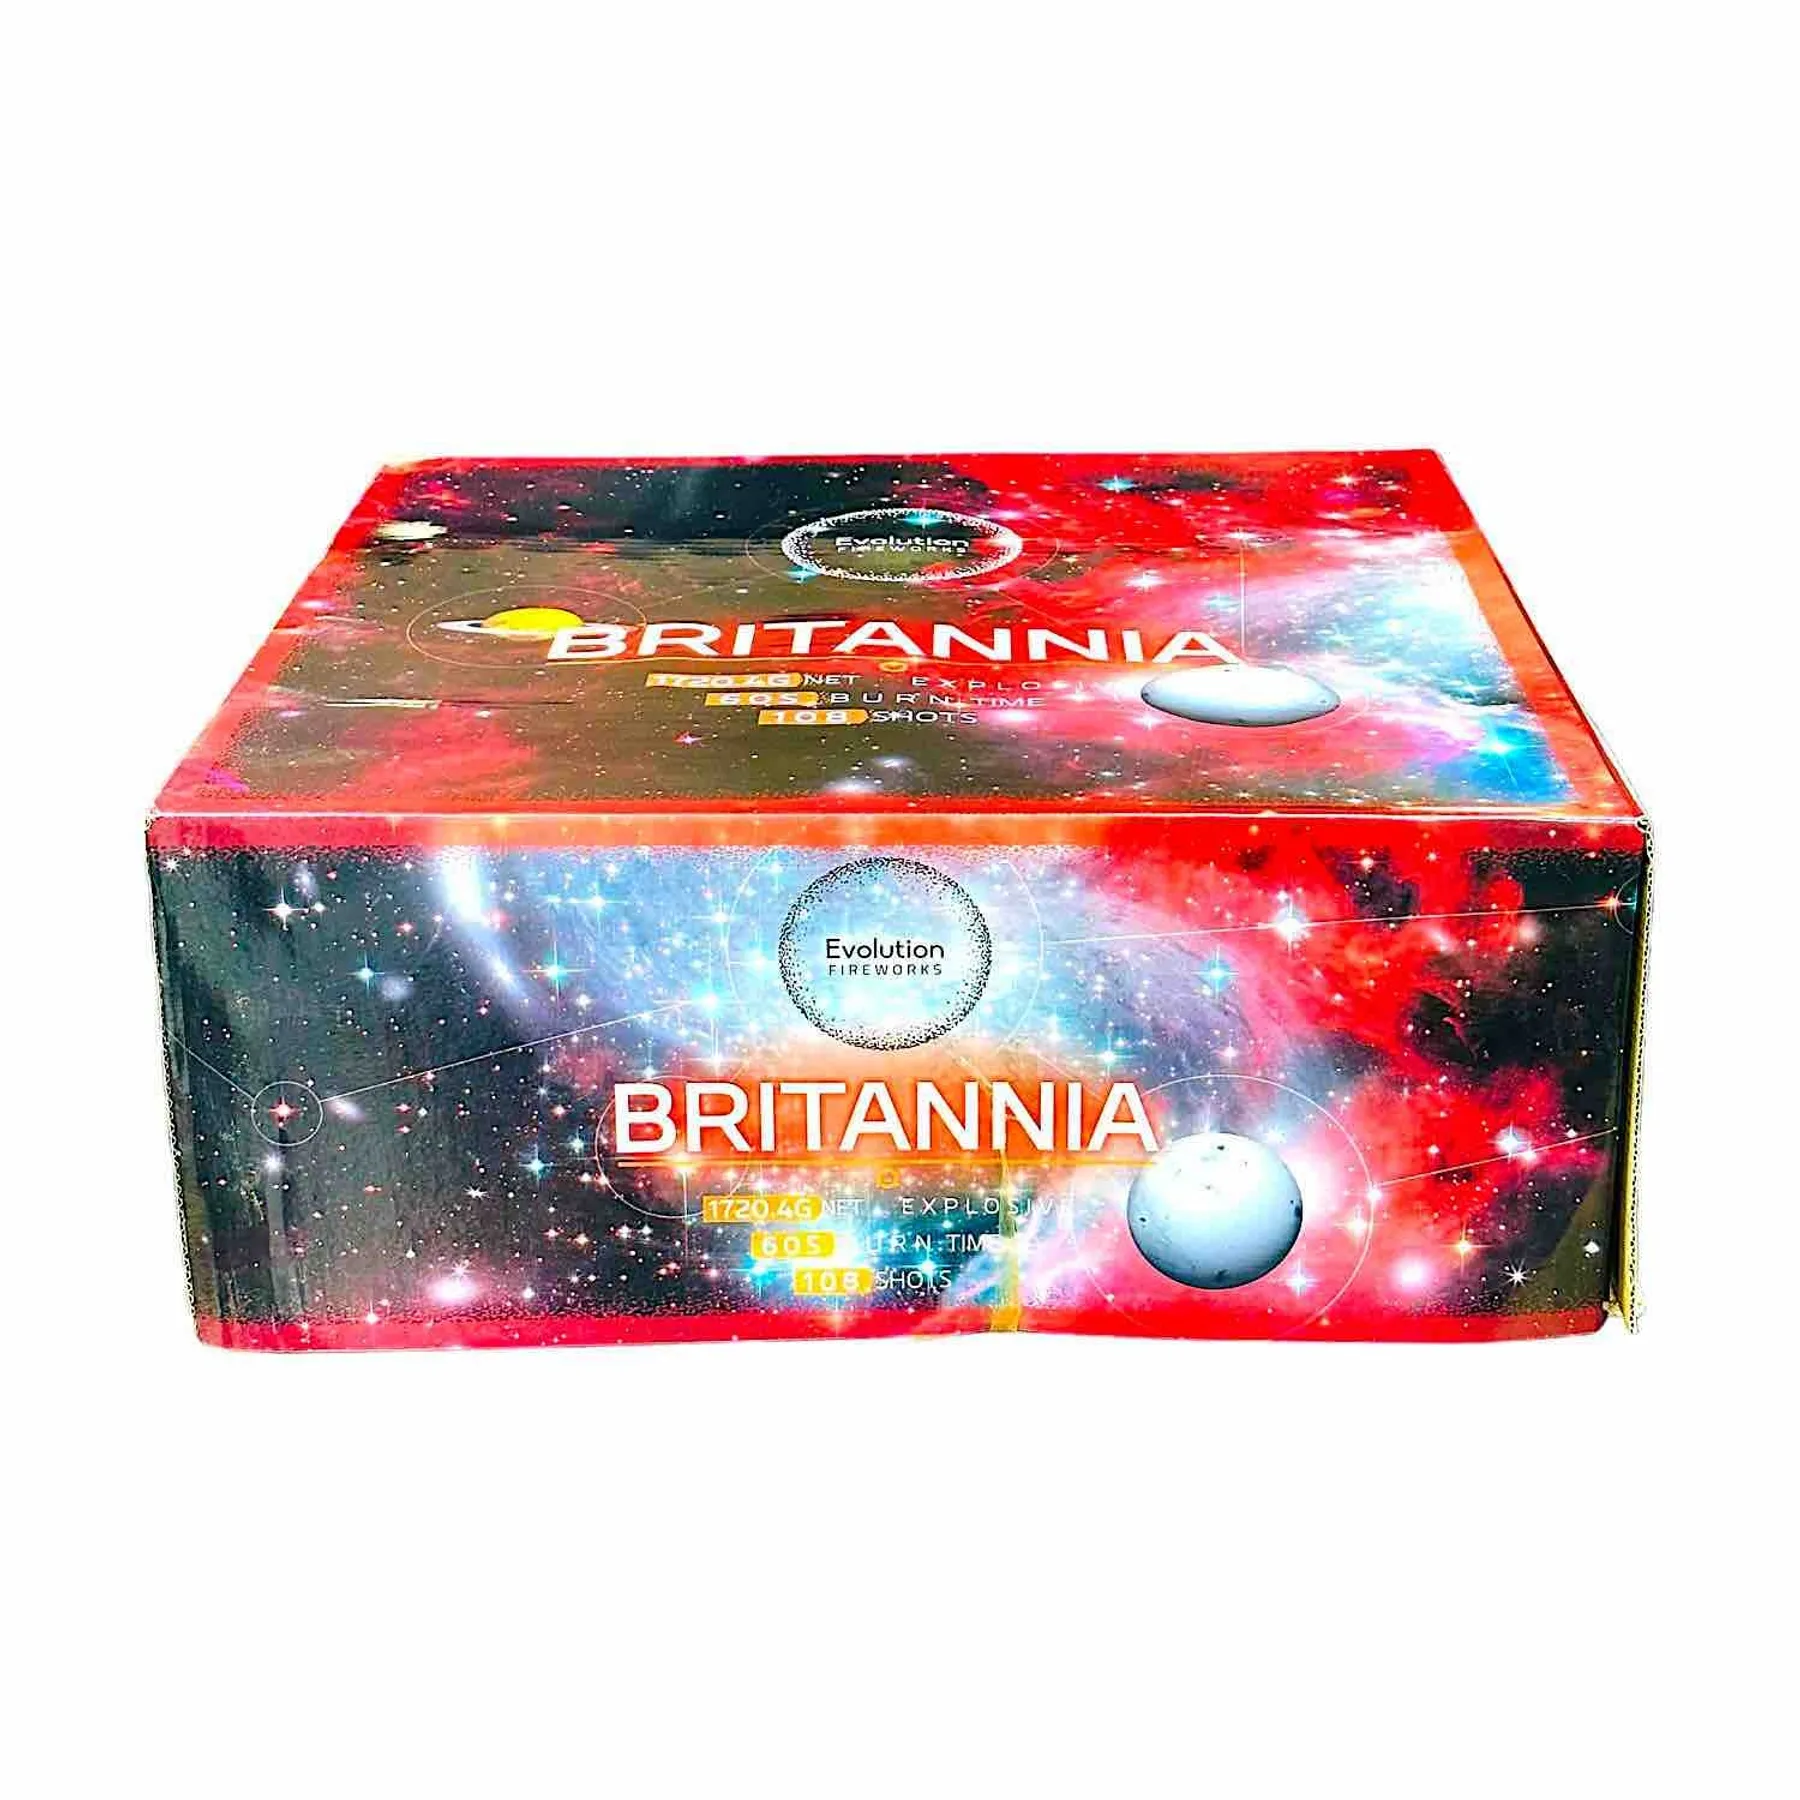 Britannia Evolution Manchester Fireworks